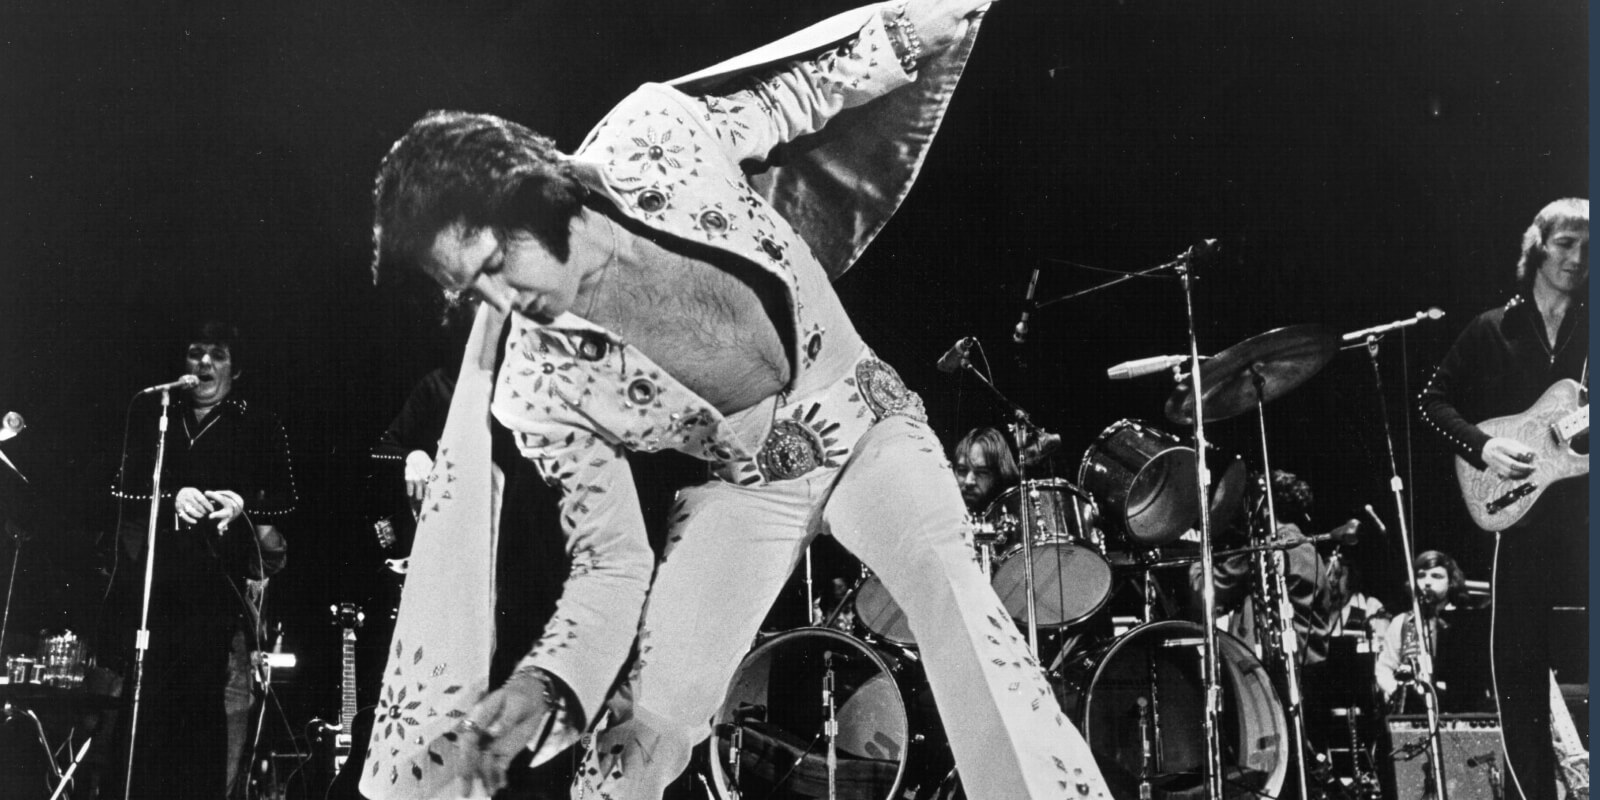 Elvis Presley wears an embellished, white jumpsuit at a 1972 concert.